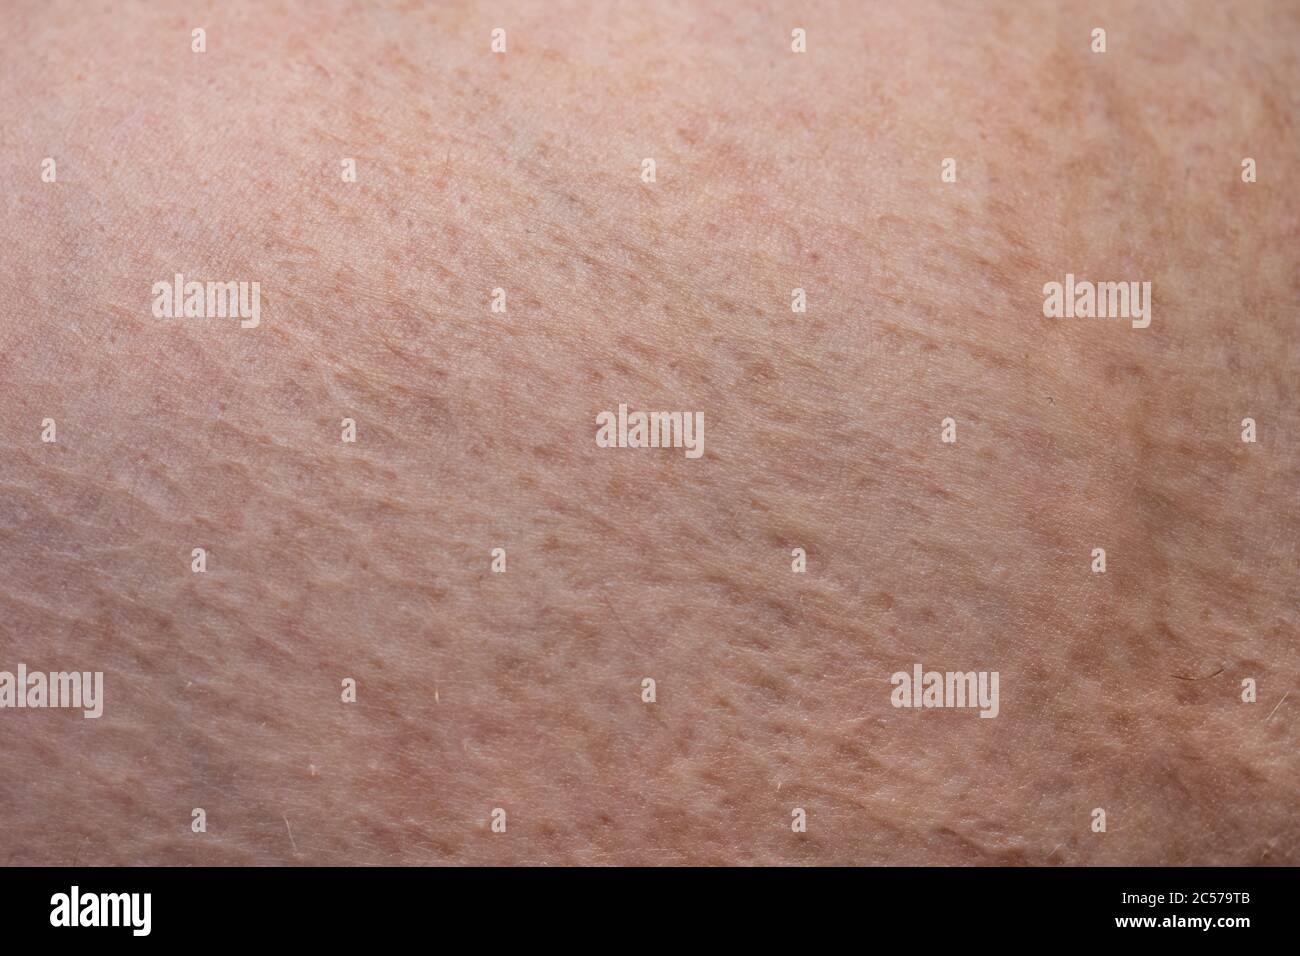 Foto della pelle dell'uomo con bruciature cicatrizzate, foto di primo piano Foto Stock